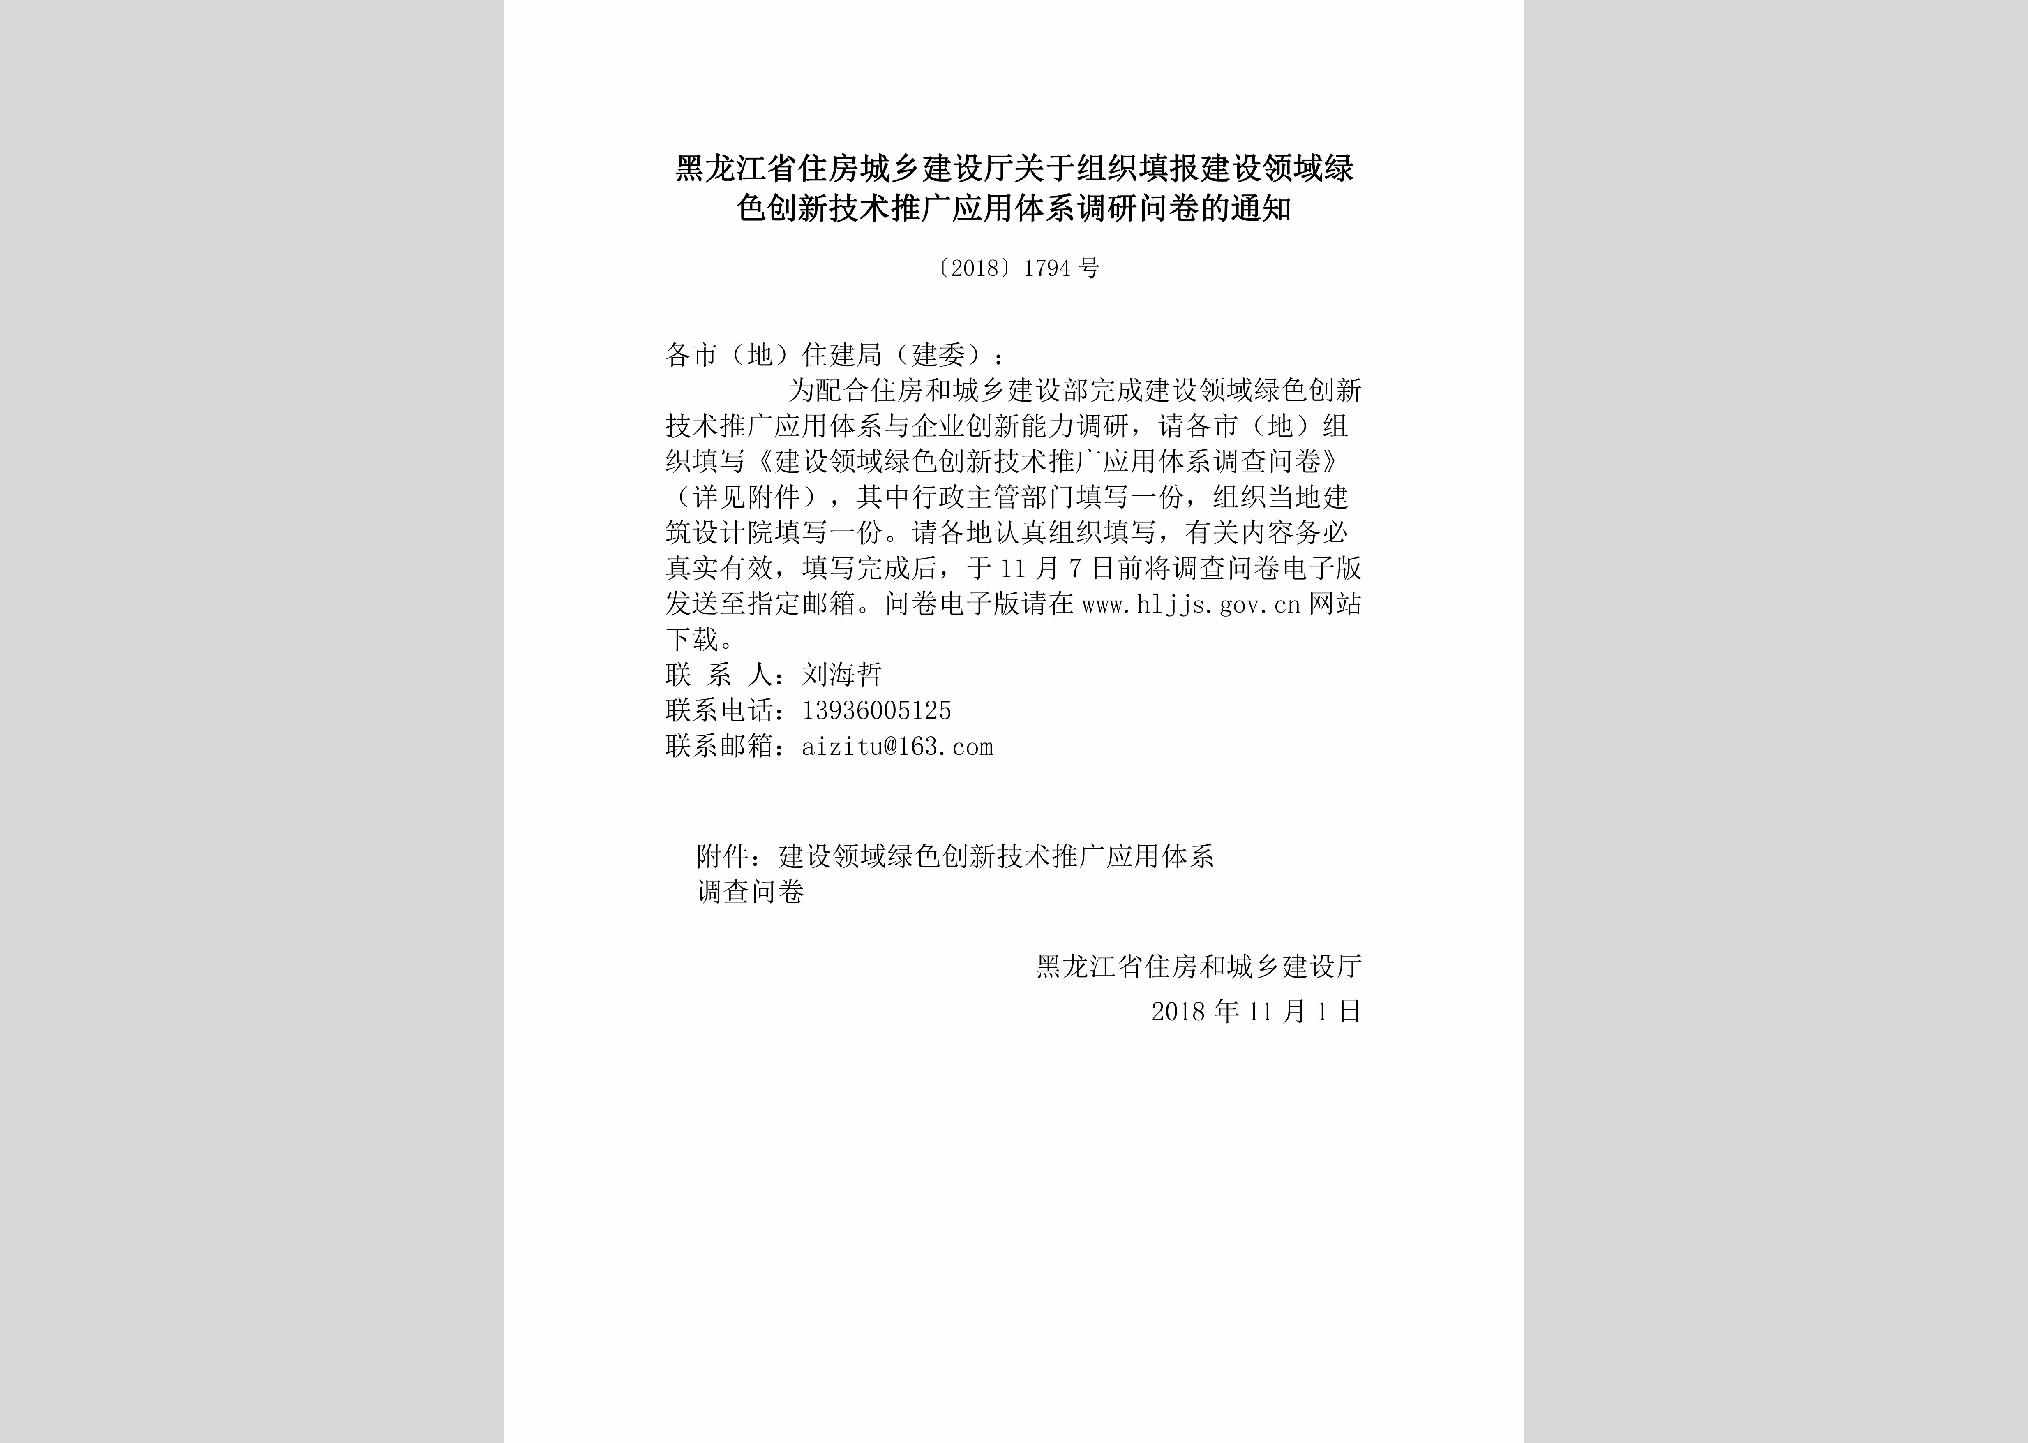 [2018]1794号：黑龙江省住房城乡建设厅关于组织填报建设领域绿色创新技术推广应用体系调研问卷的通知